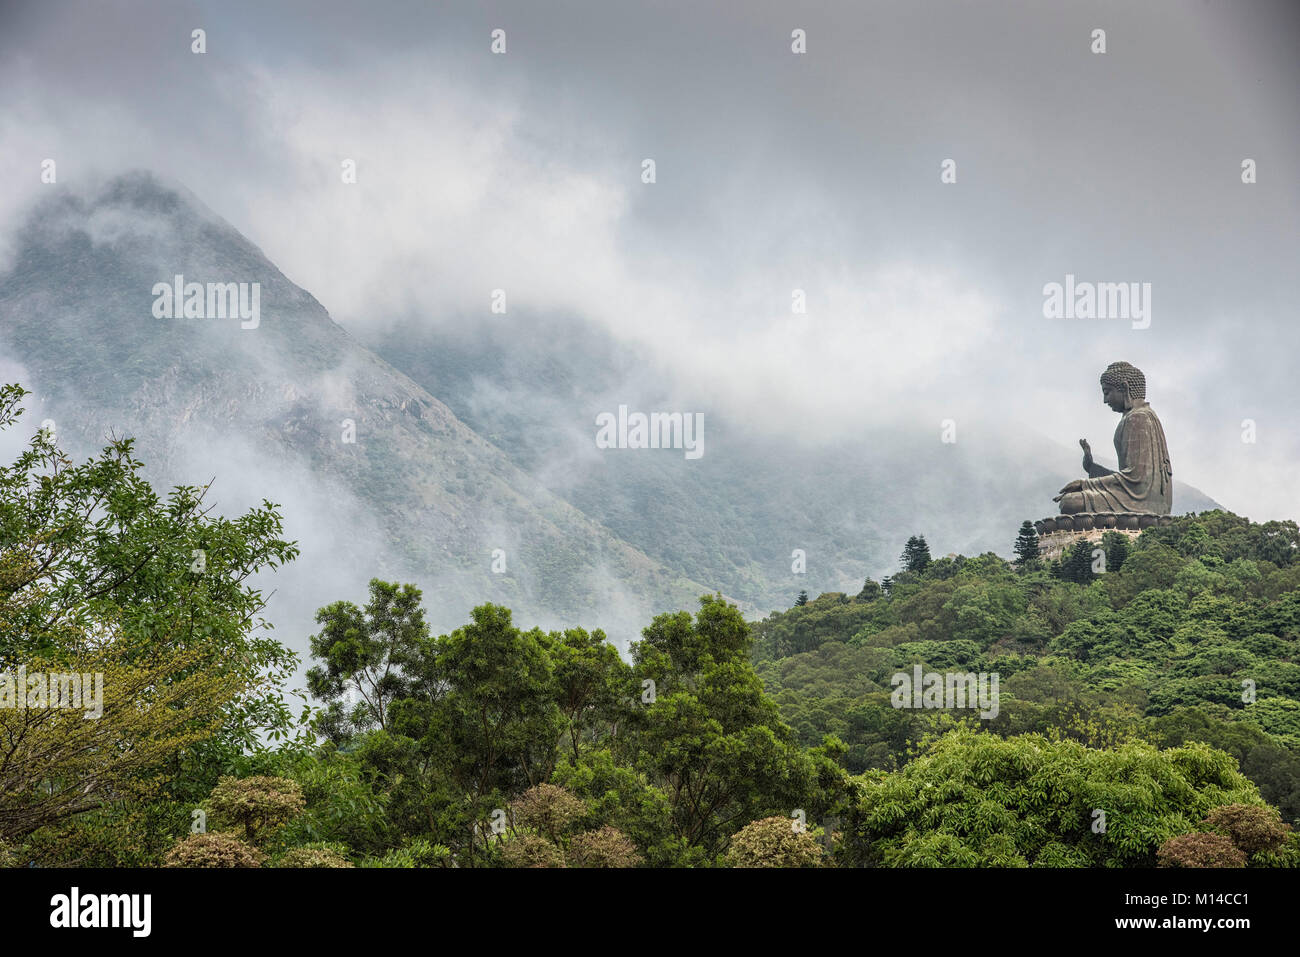 Monument de Bouddha dans les montagnes de l'île de tau Lan Hong Kong. Banque D'Images